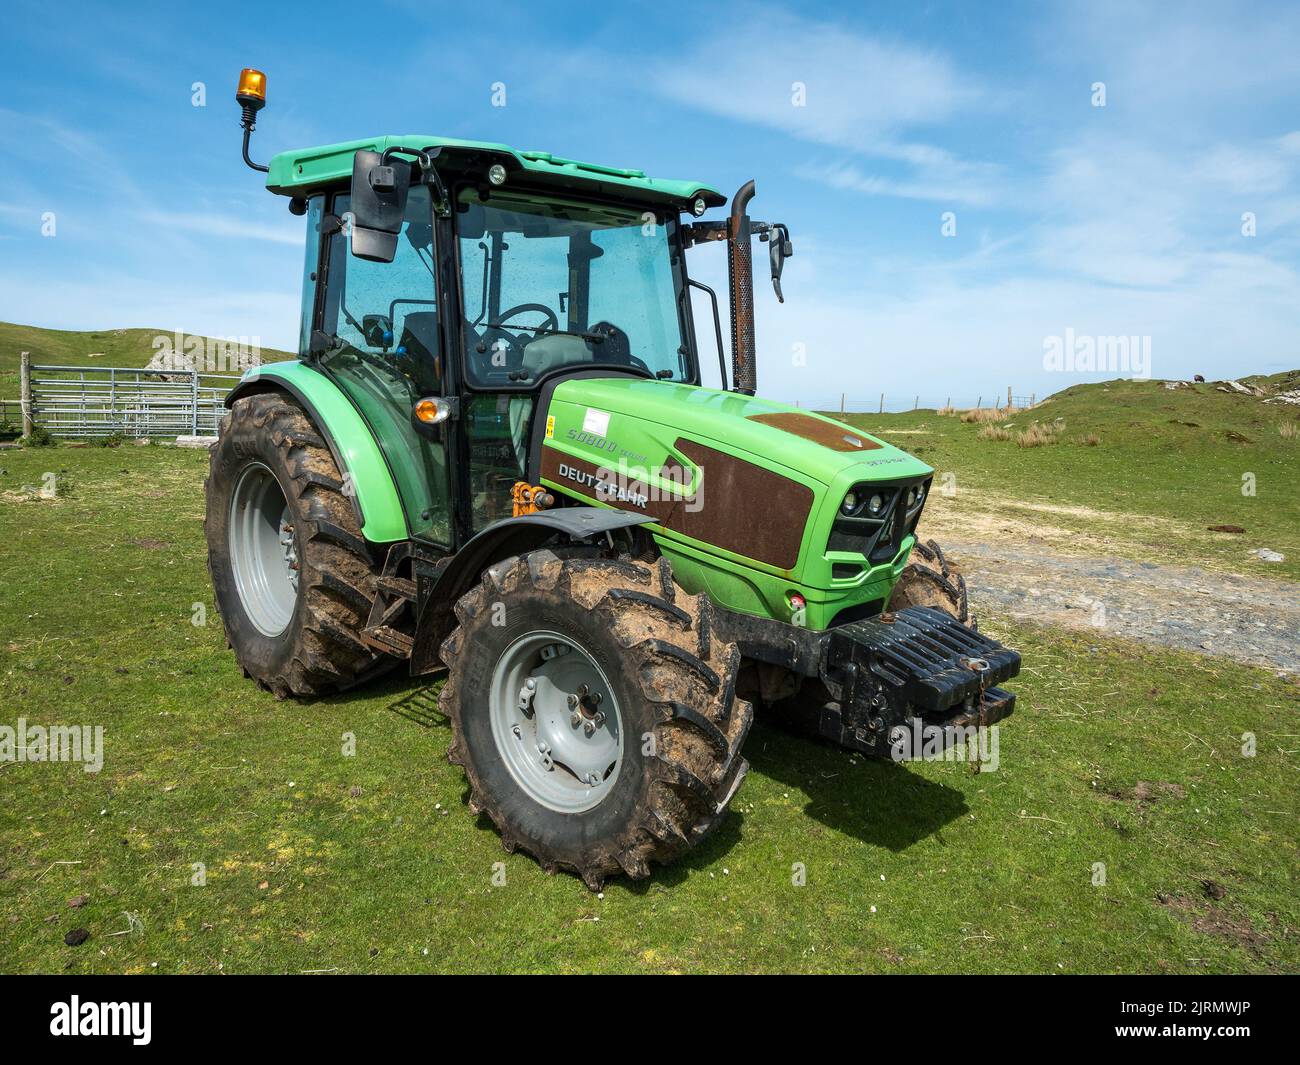 Nuevo tractor agrícola de línea central Deutz-Fahr 5080D verde brillante en campo, Escocia, Reino Unido Foto de stock